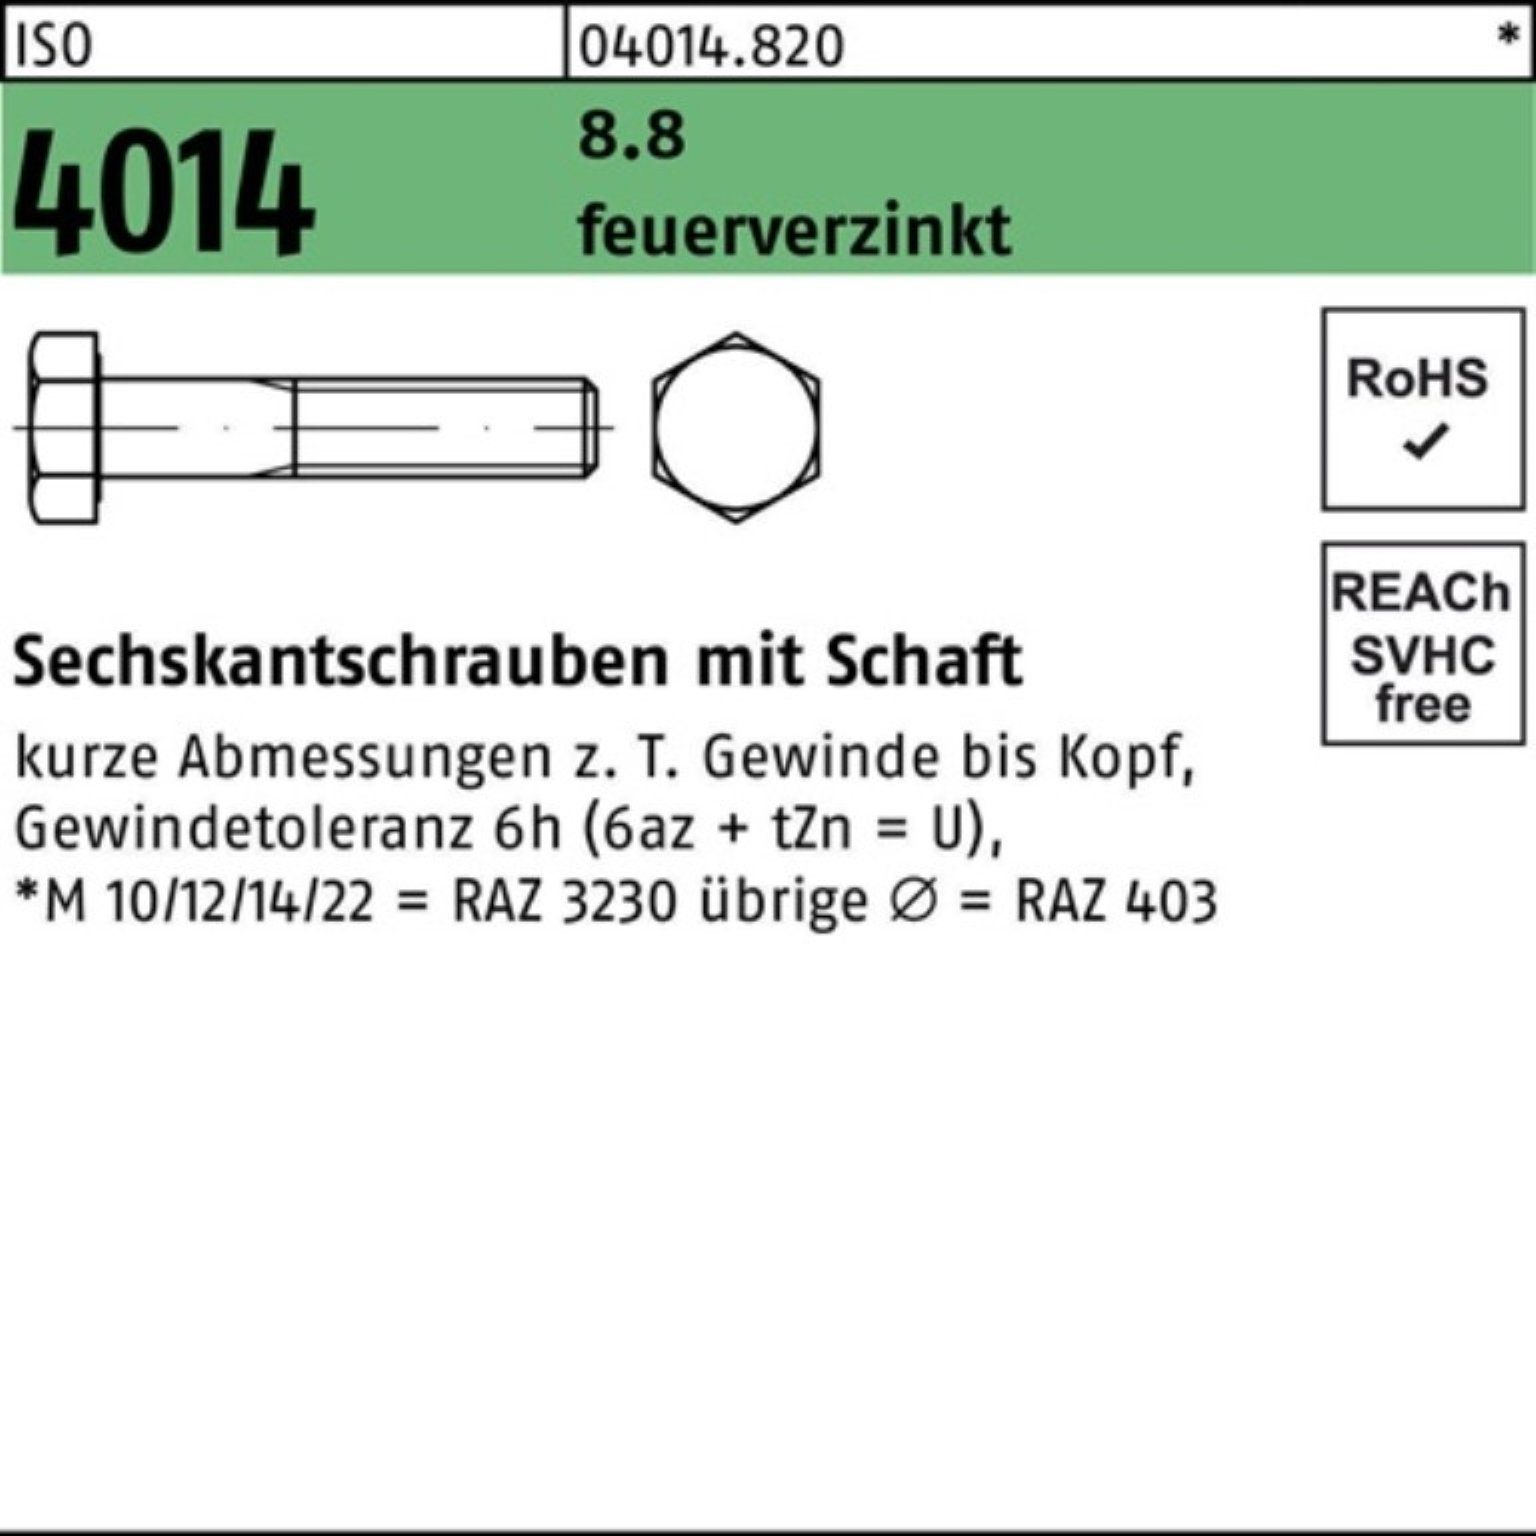 Bufab Sechskantschraube 100er Pack Sechskantschraube ISO 4014 Schaft M24x 200 8.8 feuerverz. 1